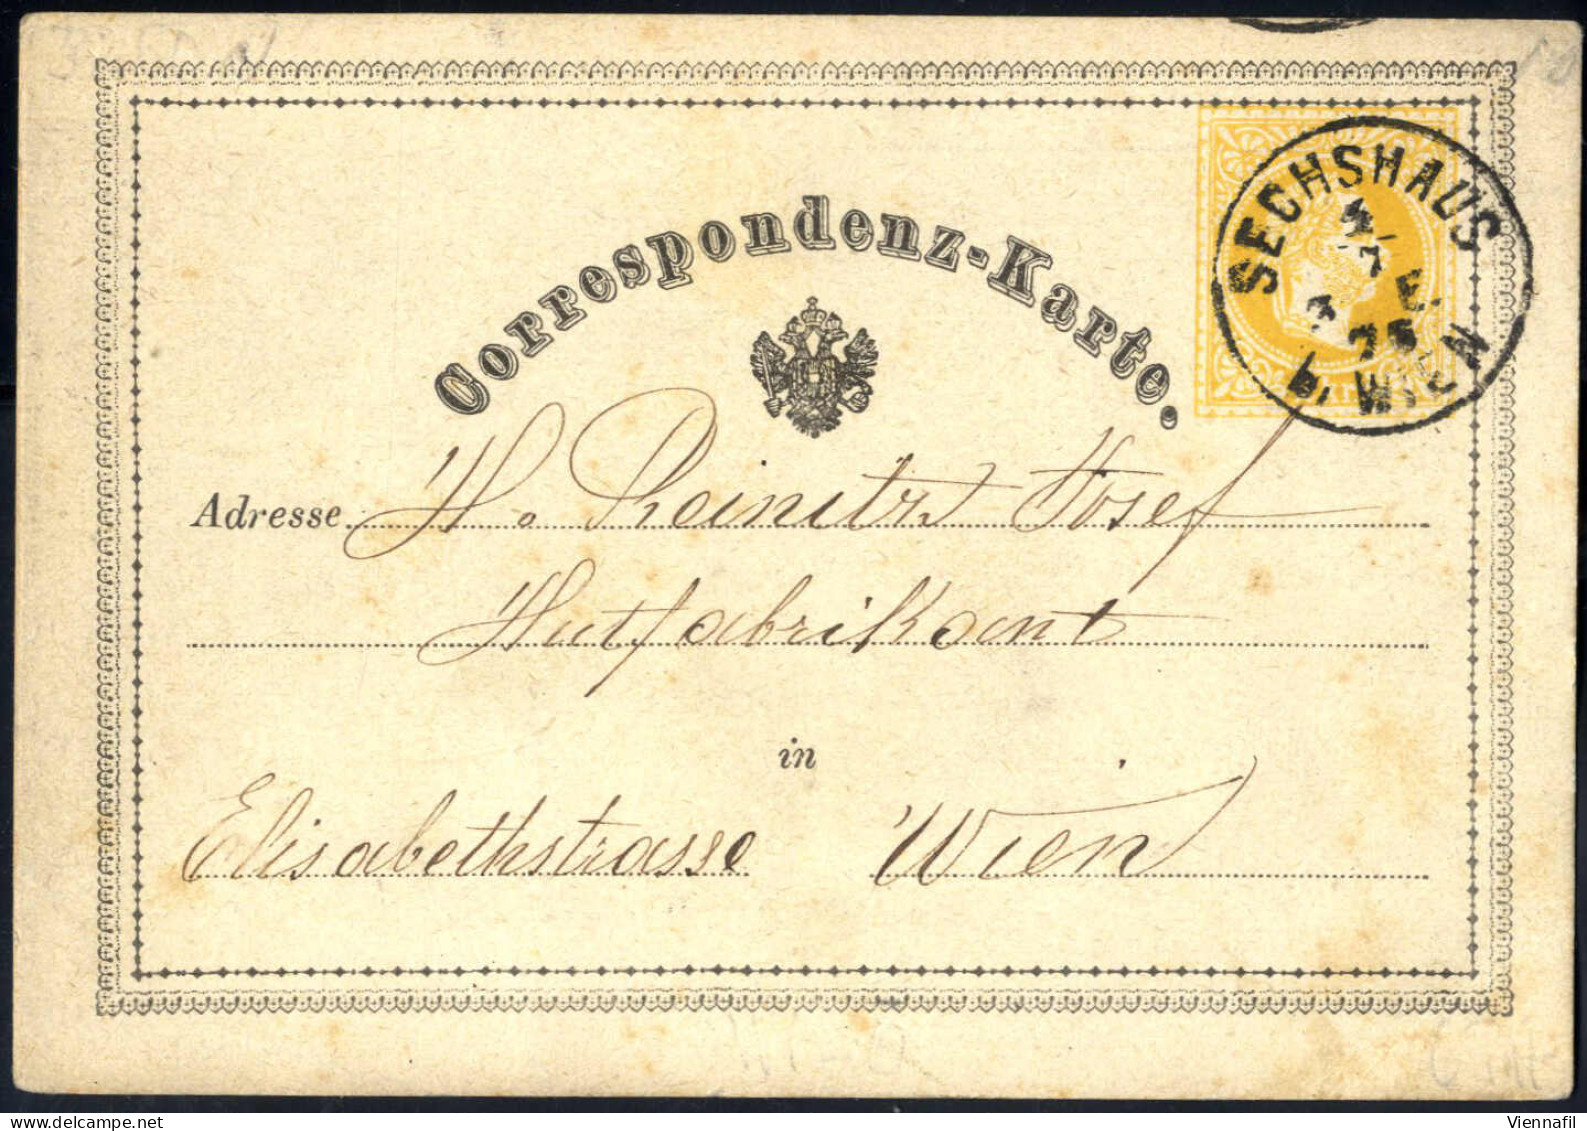 cover Korrespondenzkarten 1870/76, Posten von 64 gelben 2 Kr Ganzsachenkarten, meist gebraucht (nur wenige postfrisch), 